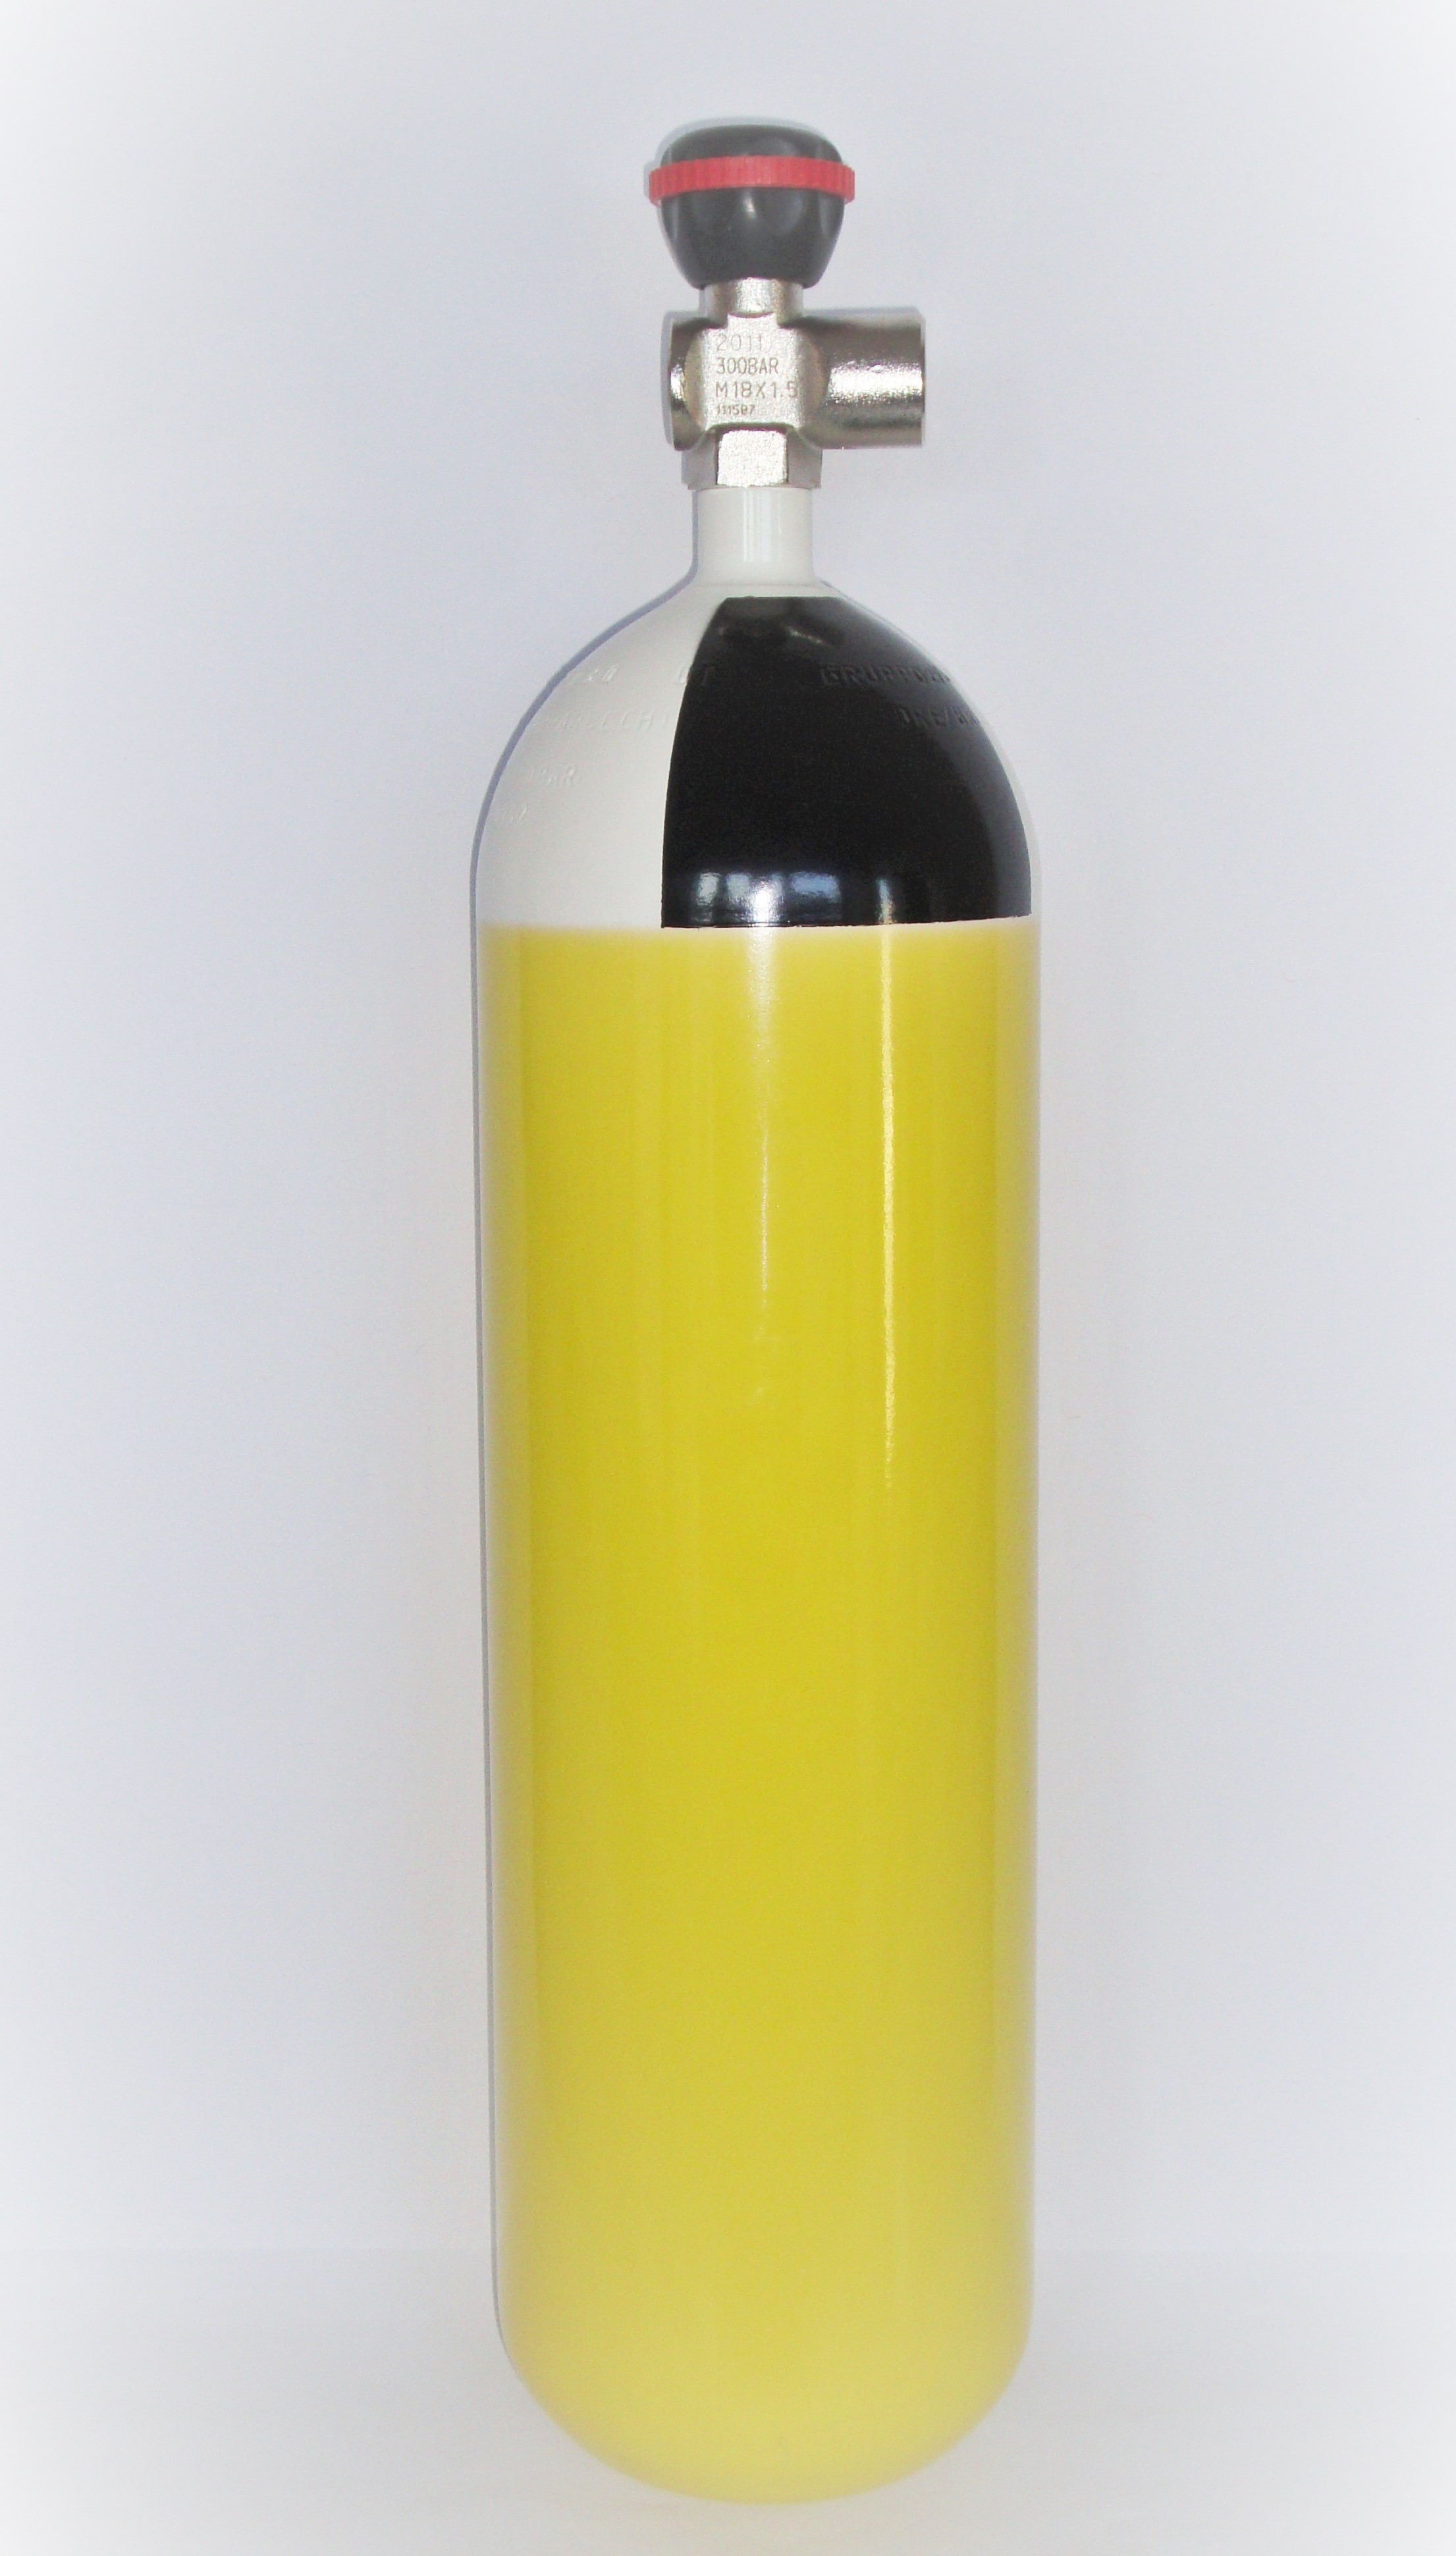 Druckluftflasche 300 bar (Composite)